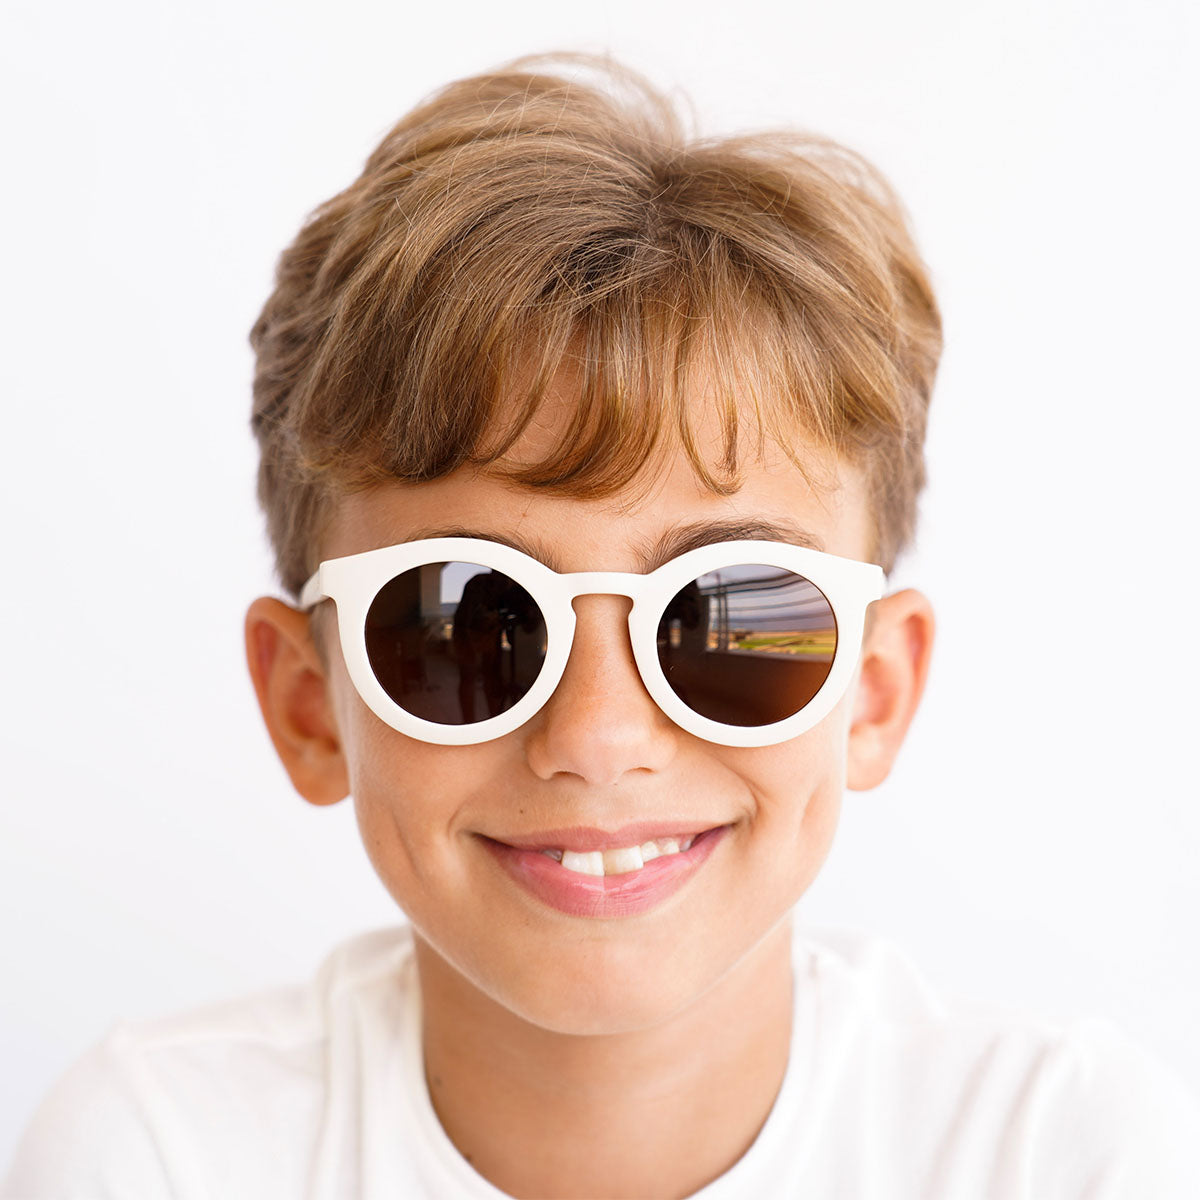 De Grech & co. zonnebril classic buigbaar kids in de kleur atlas is speciaal ontworpen voor kindjes die willen matchen met hun mama. De zonnebril is namelijk ook beschikbaar voor moeders en baby’s! VanZus